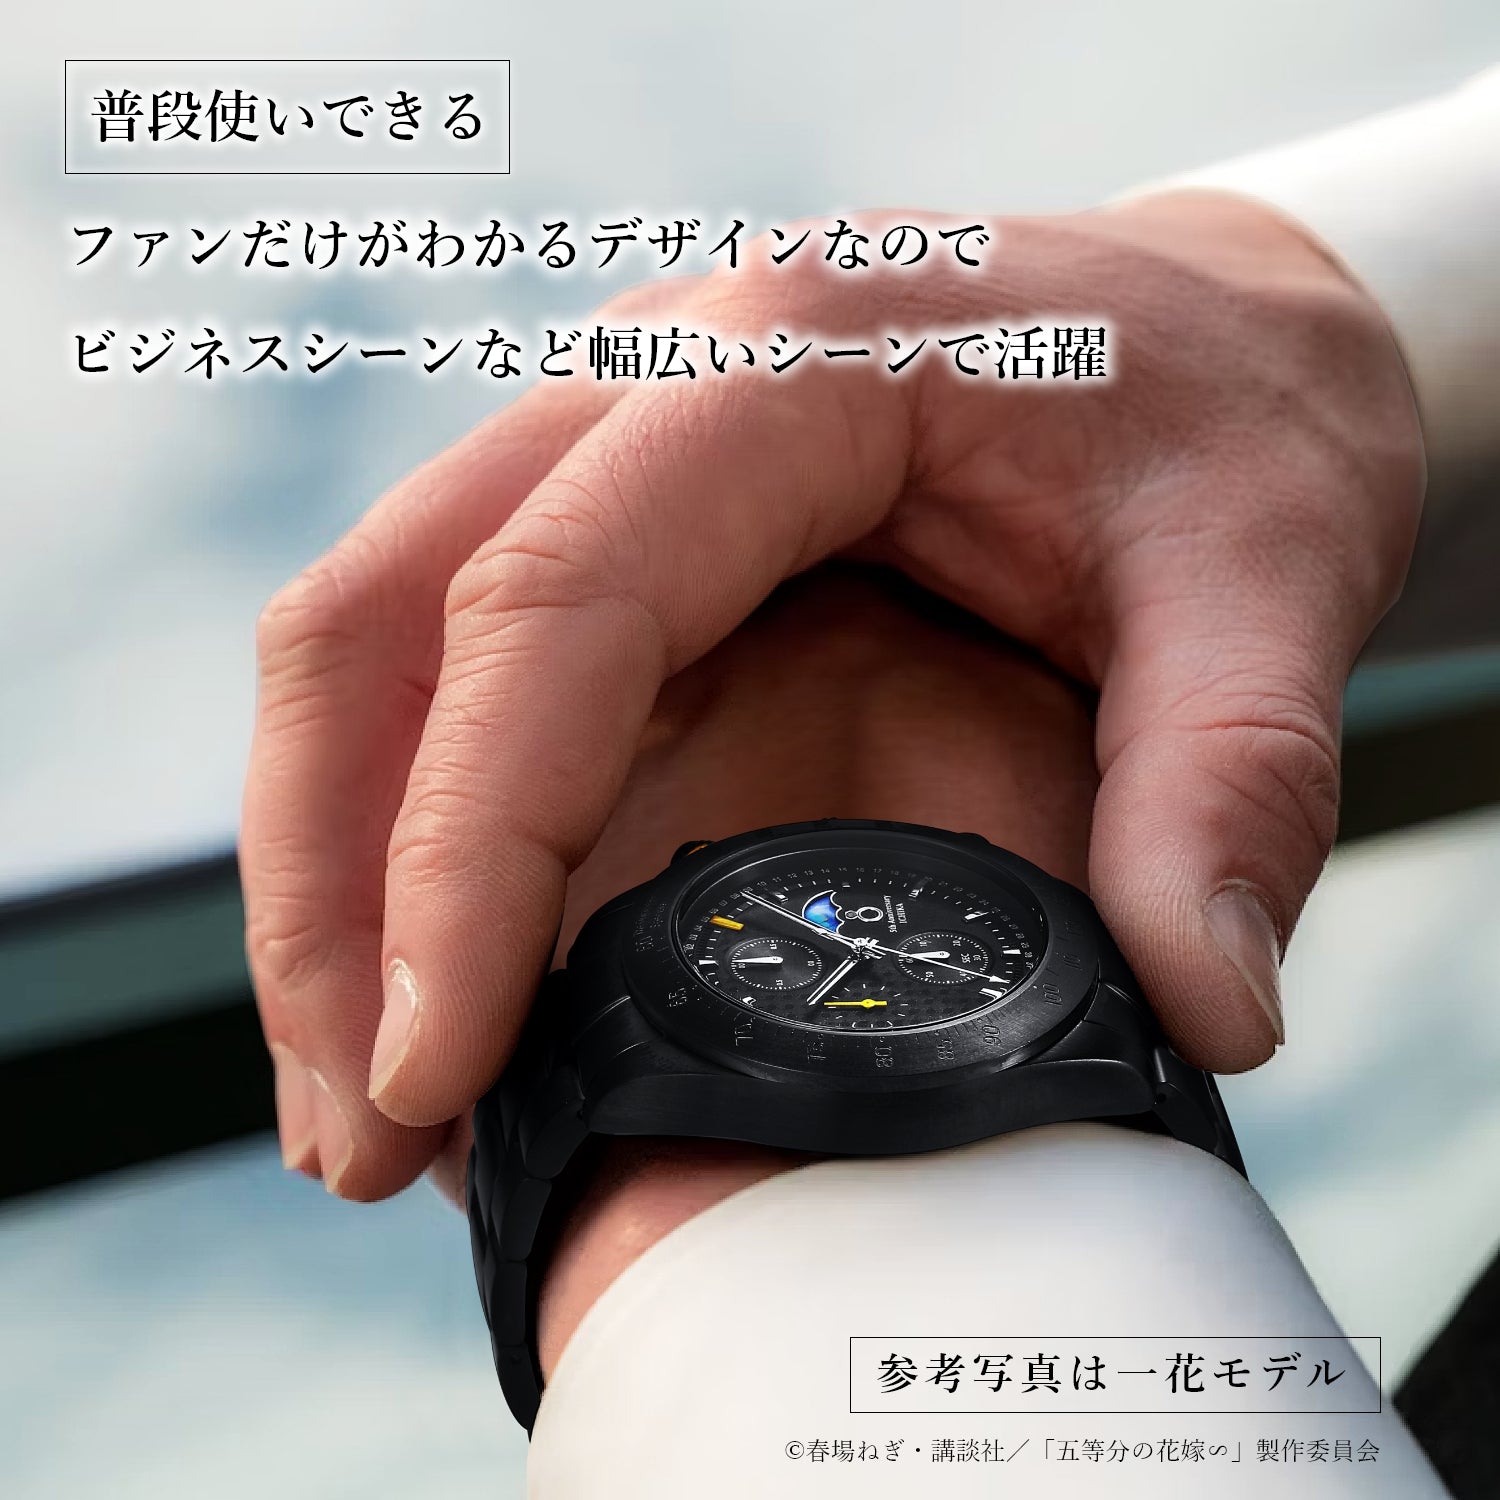 TVスペシャルアニメ「五等分の花嫁∽」5周年記念サン＆ムーン クロノグラフ腕時計| 中野 五月